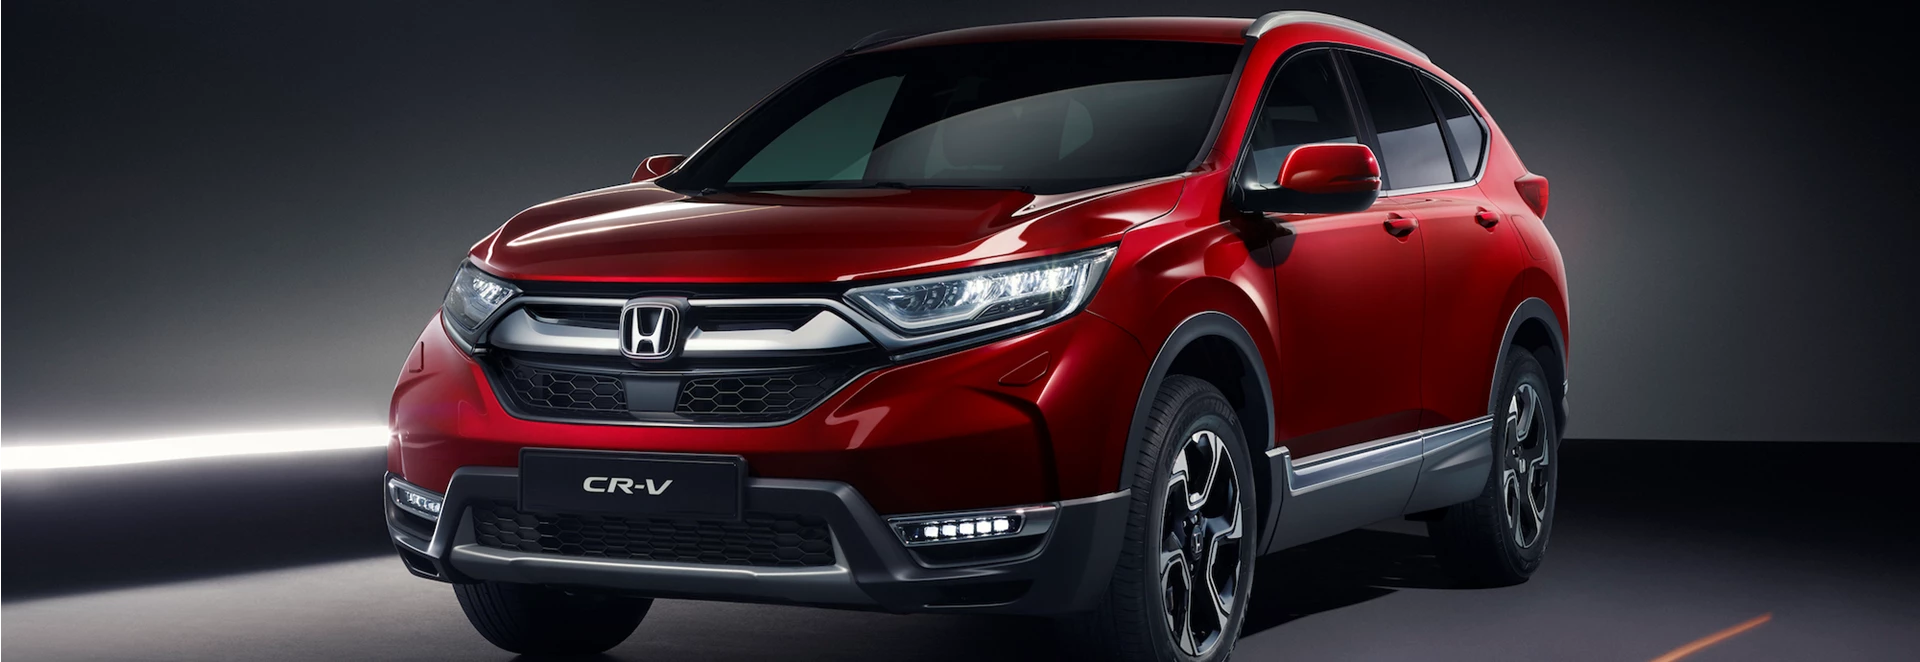 2018 Honda CR-V revealed in European specification